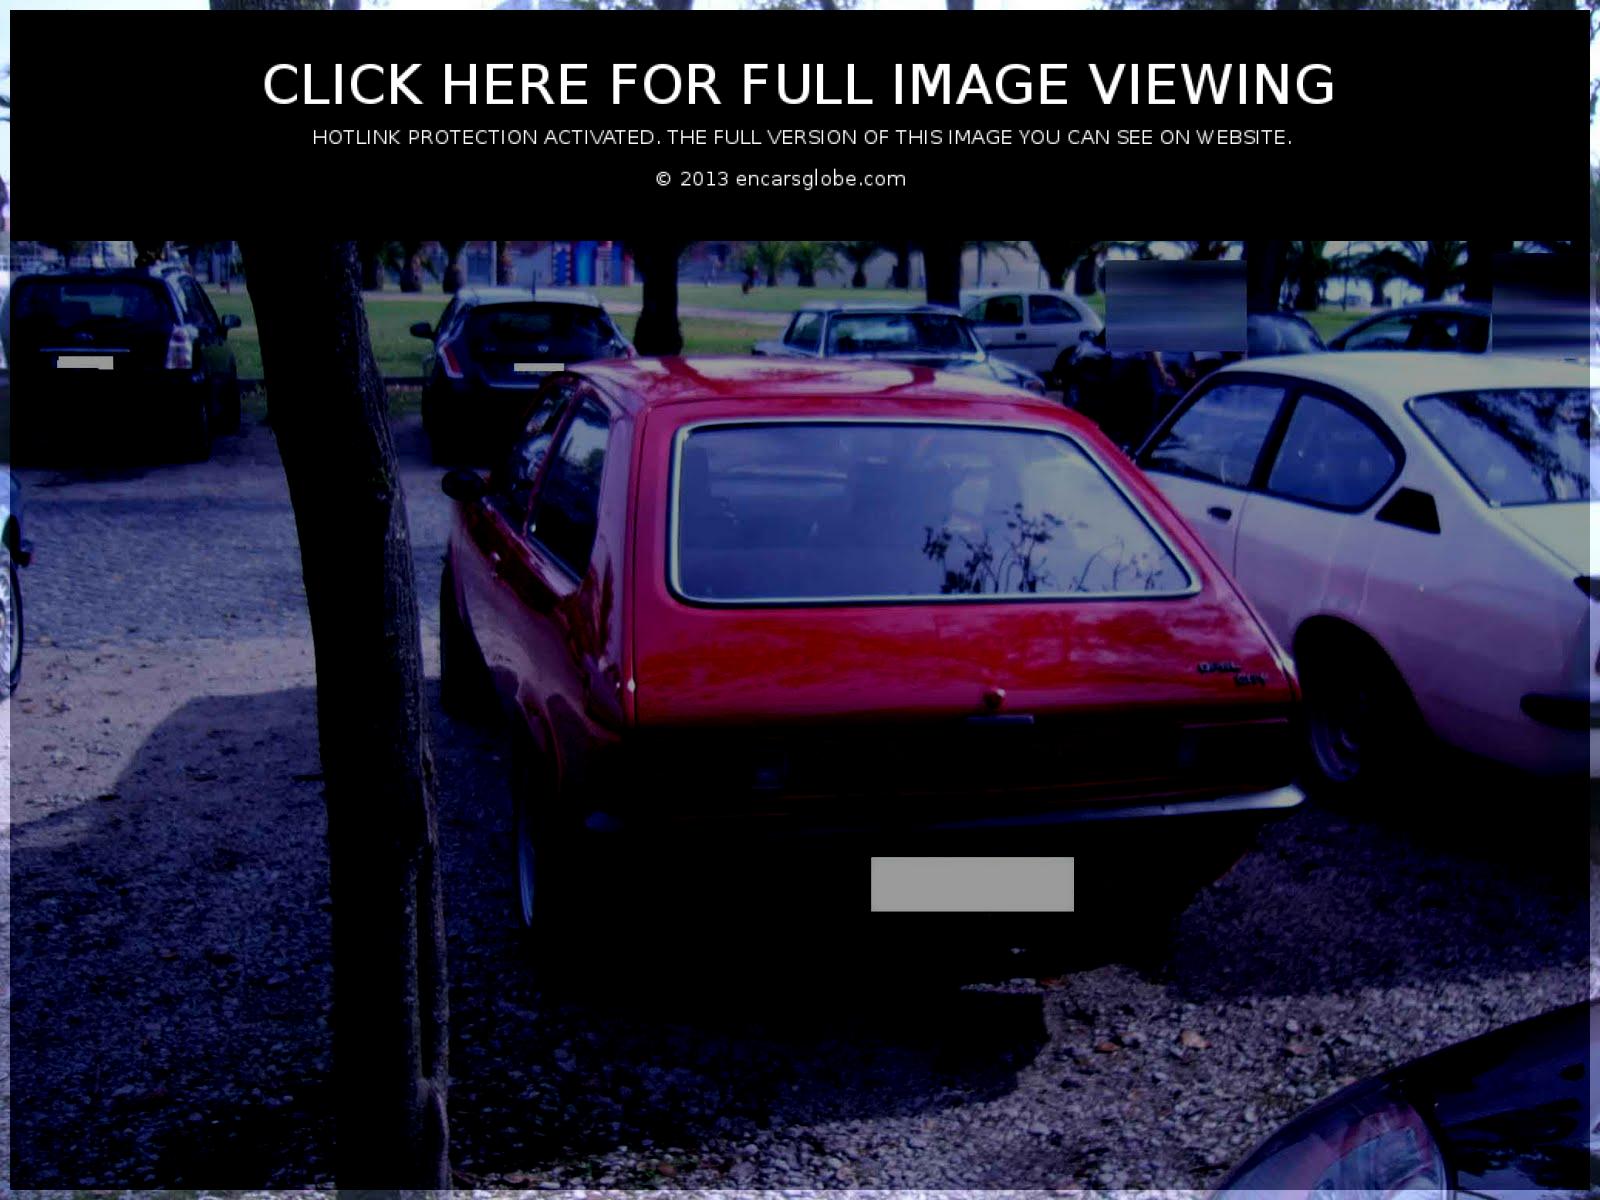 Opel City: Description du modèle, galerie de photos, modifications...